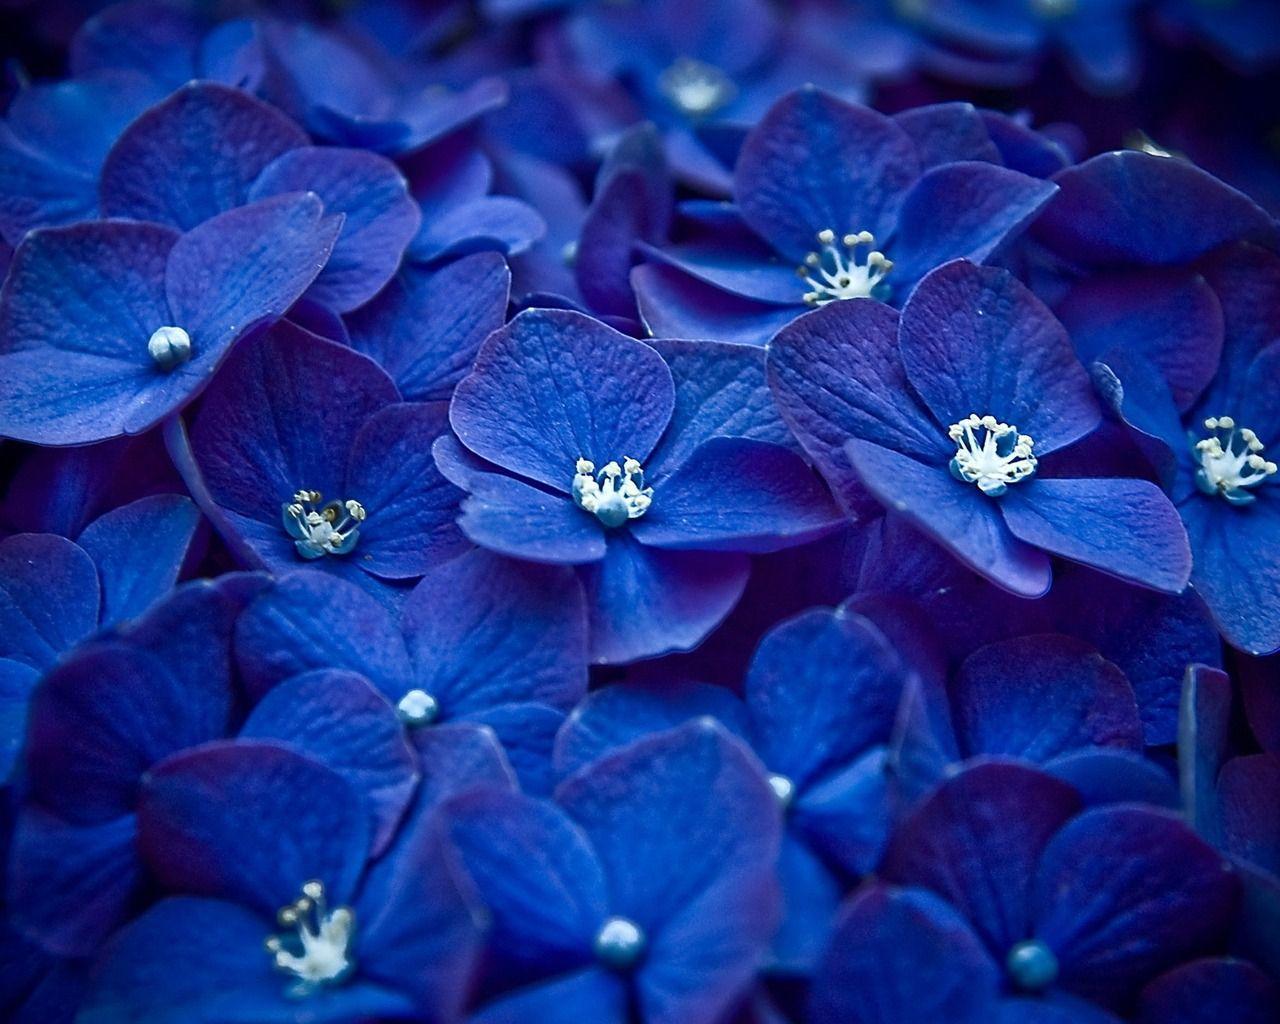 Cute blue flowers wallpaper. HD Wallpaper Source